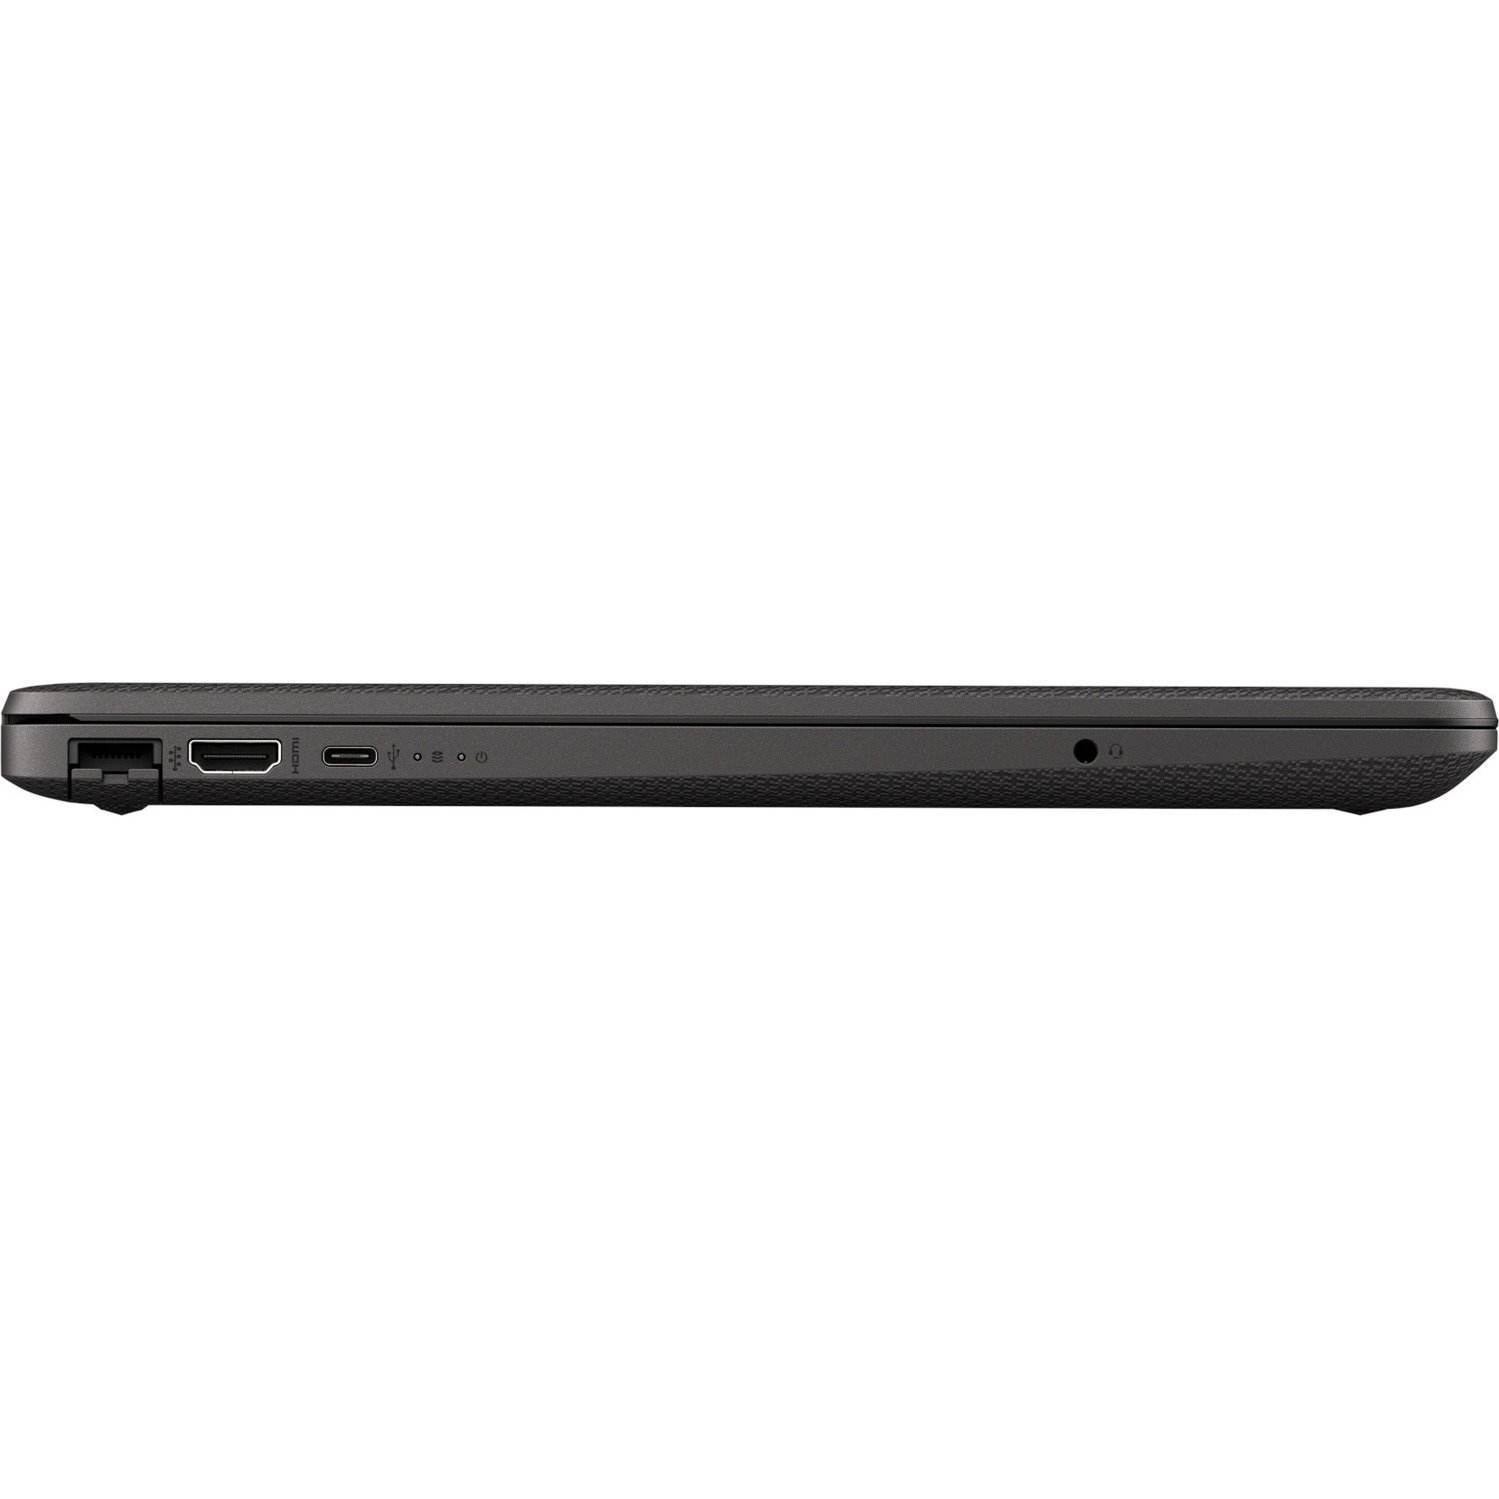 HP 250 G8 39.6 cm (15.6") Notebook - HD - 1366 x 768 - Intel Core i5 11th Gen i5-1135G7 Quad-core (4 Core) 2.40 GHz - 8 GB RAM - 256 GB SSD - Dark Ash Silver